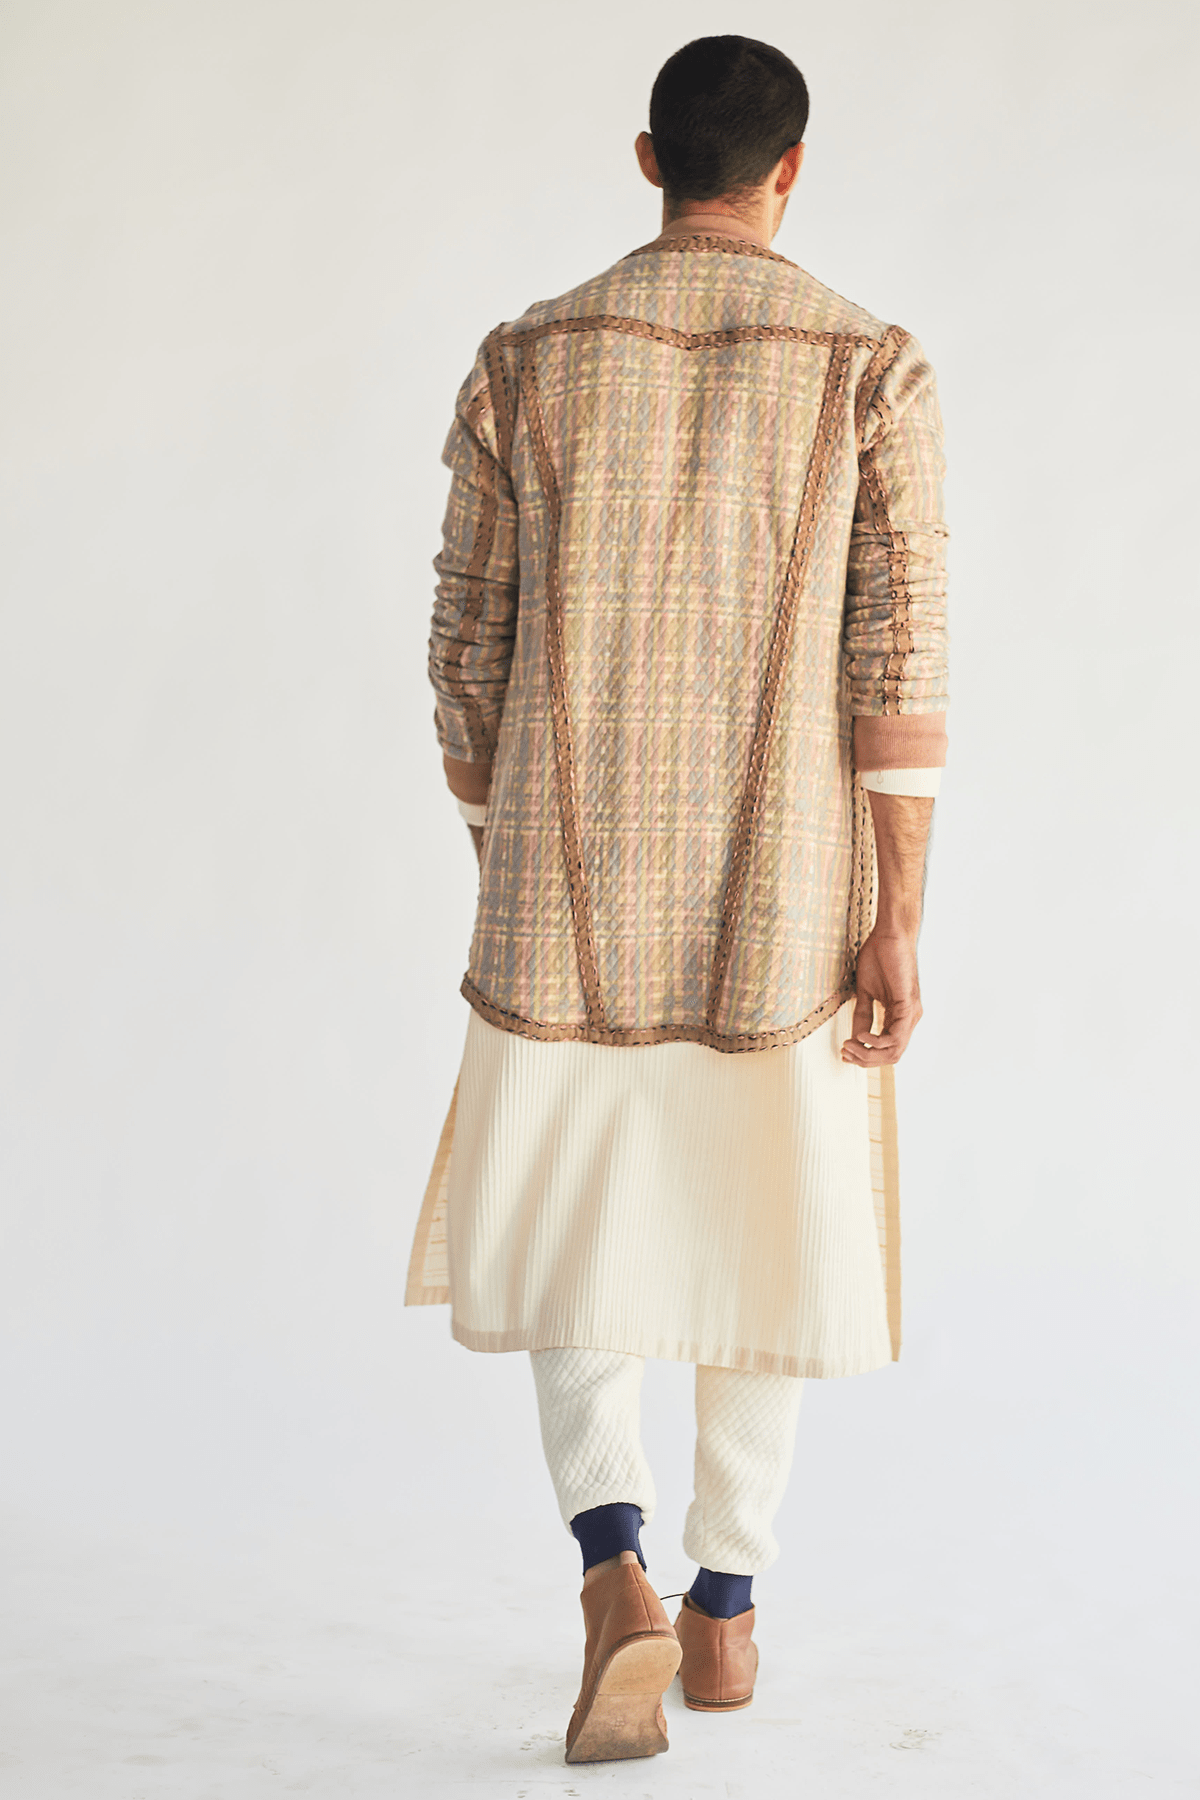 Ribbed Detail Pants - Kunal Anil Tanna